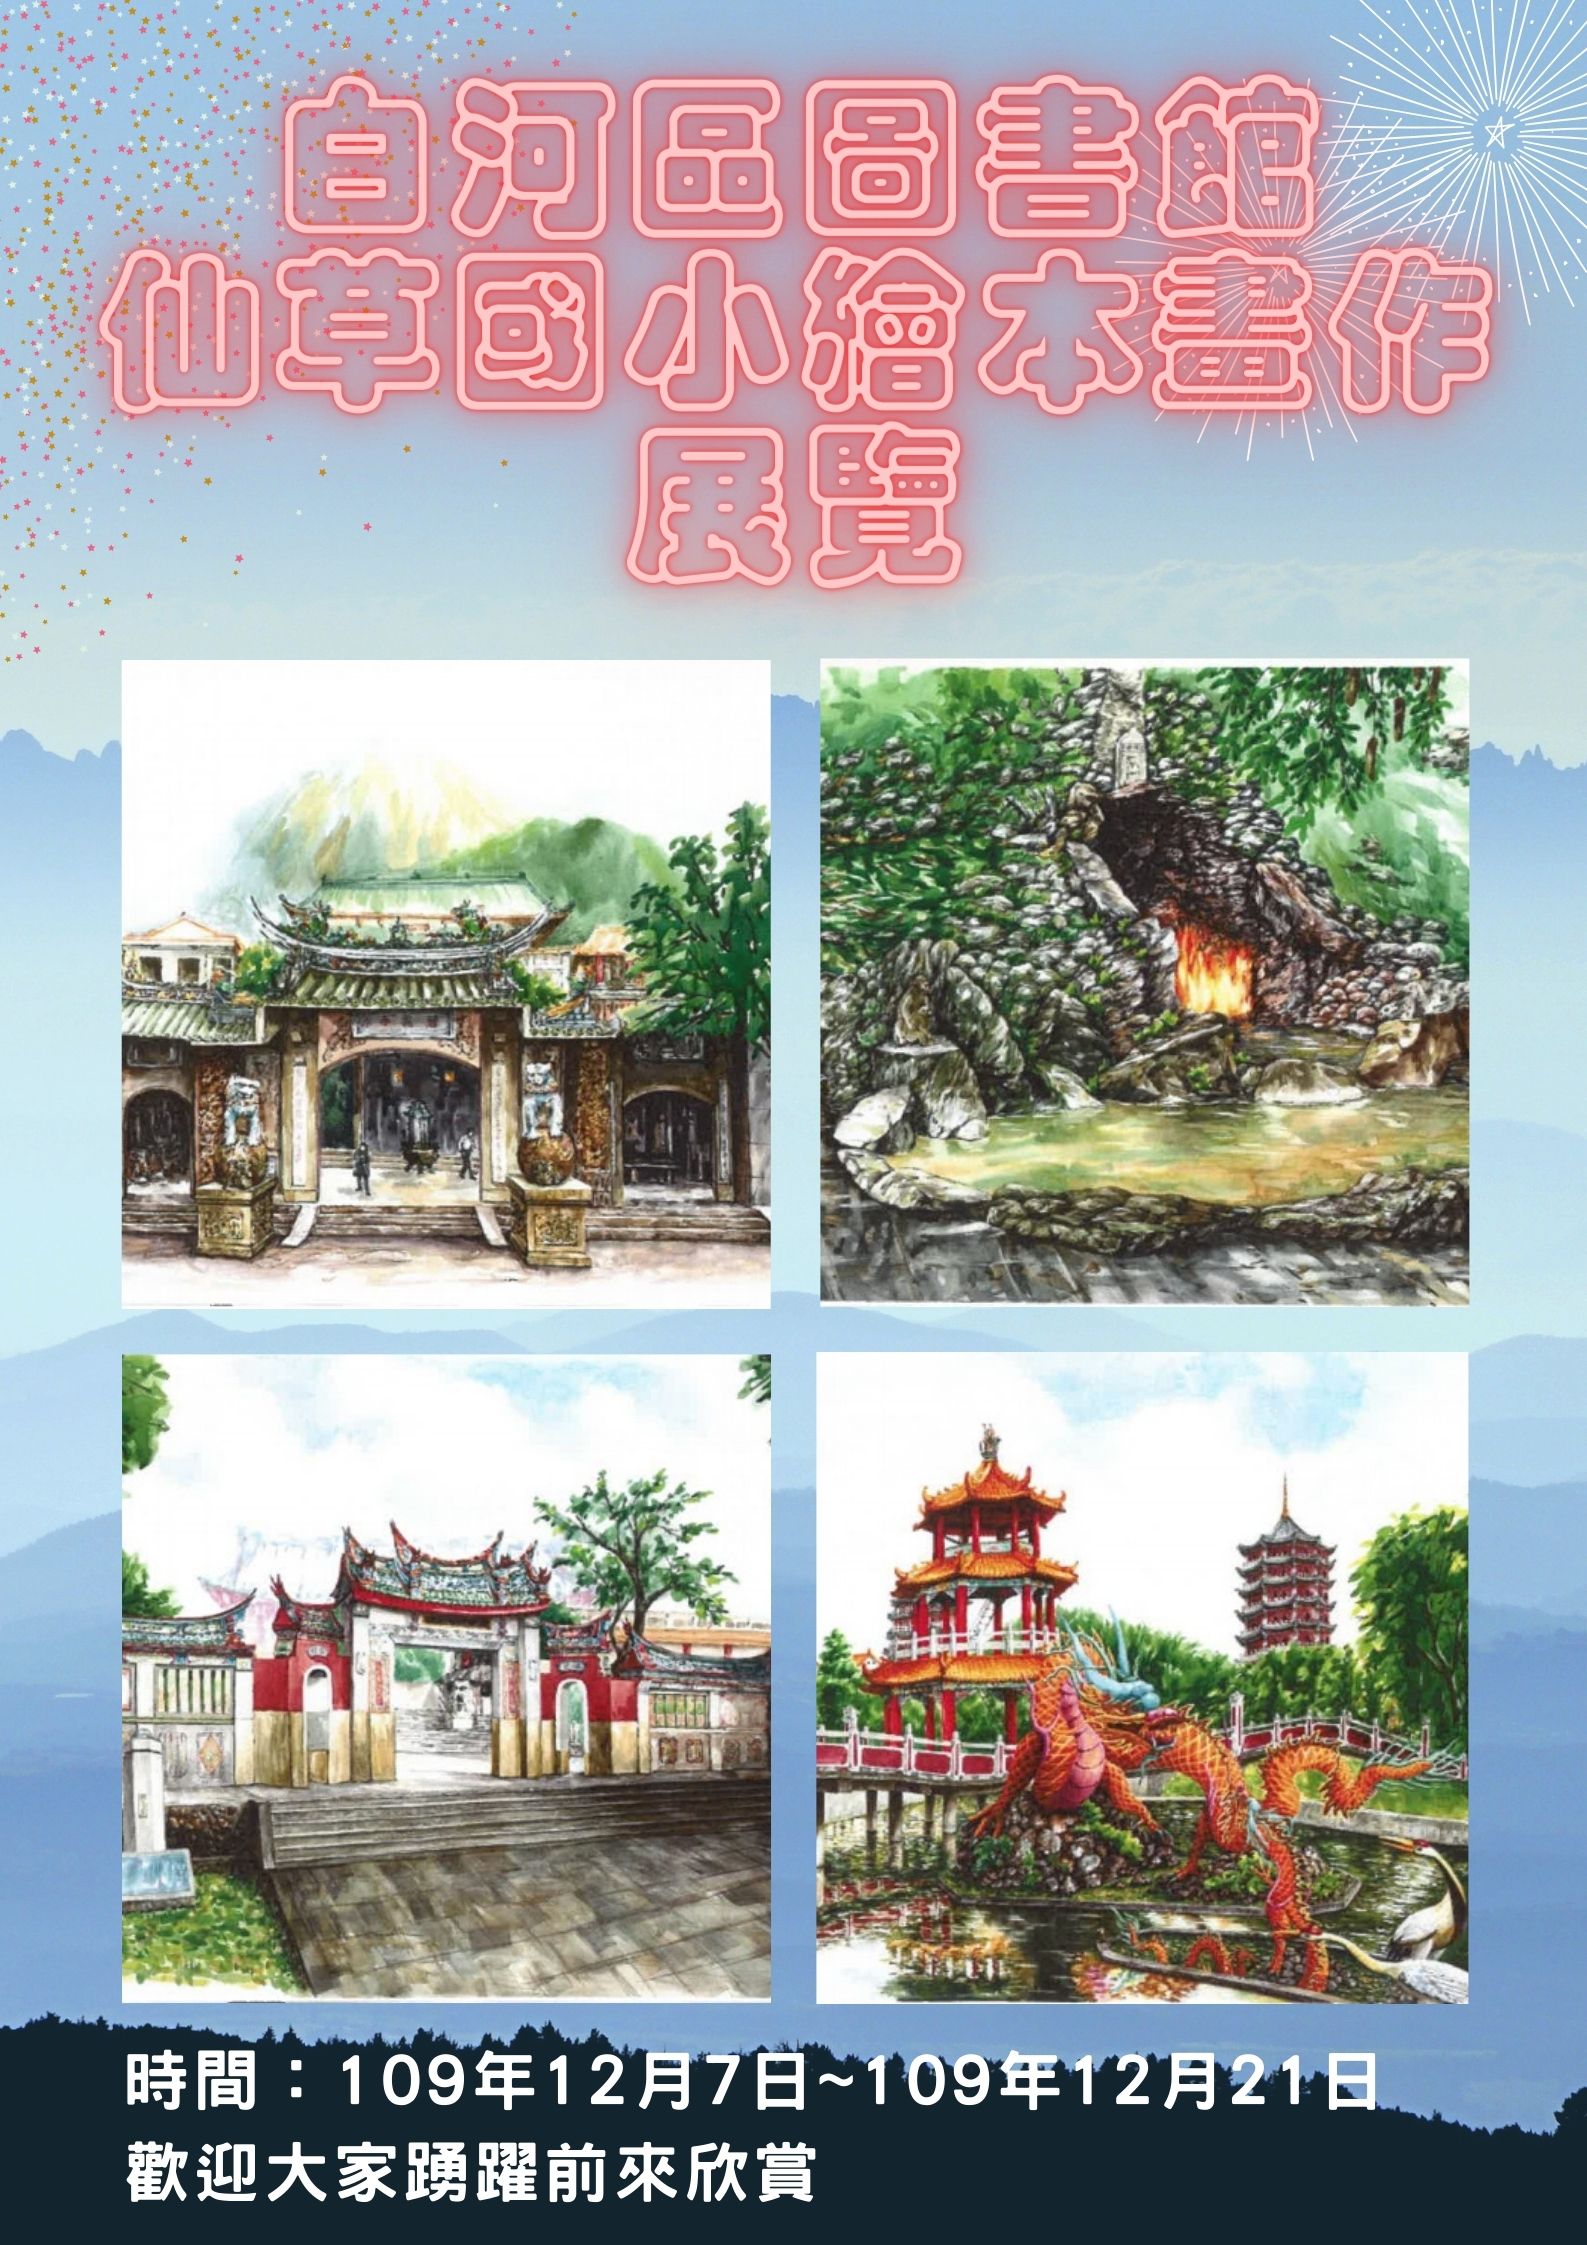 仙草國小本年度繪本畫作展覽廣告海報